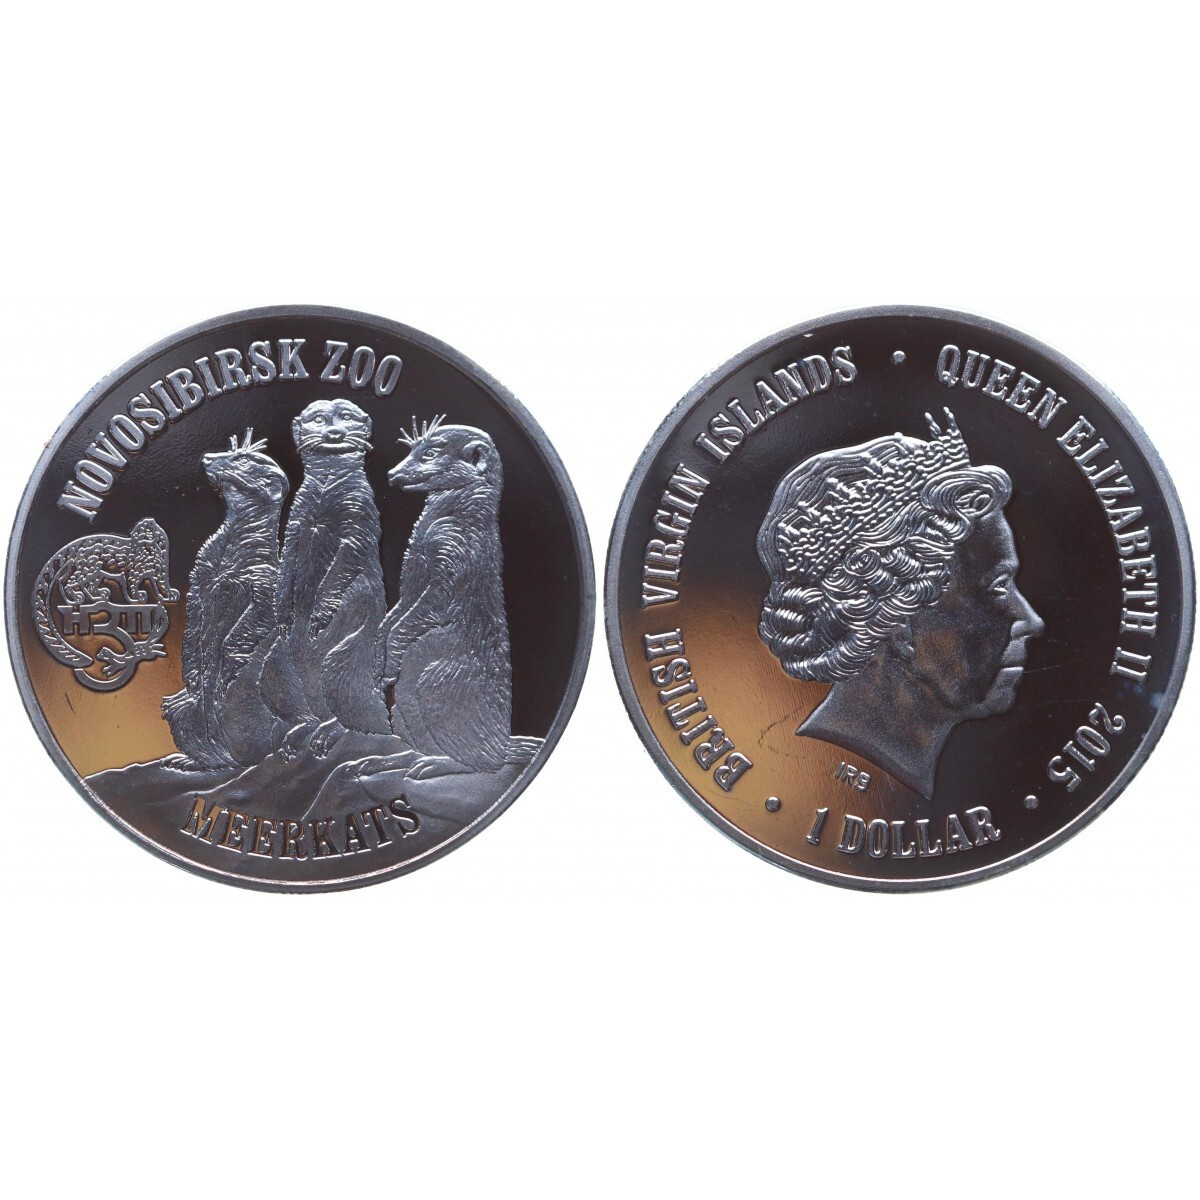 Купить монеты в новосибирске. Монеты с Новосибирском. Монета «Новосибирск», d= 2 см.